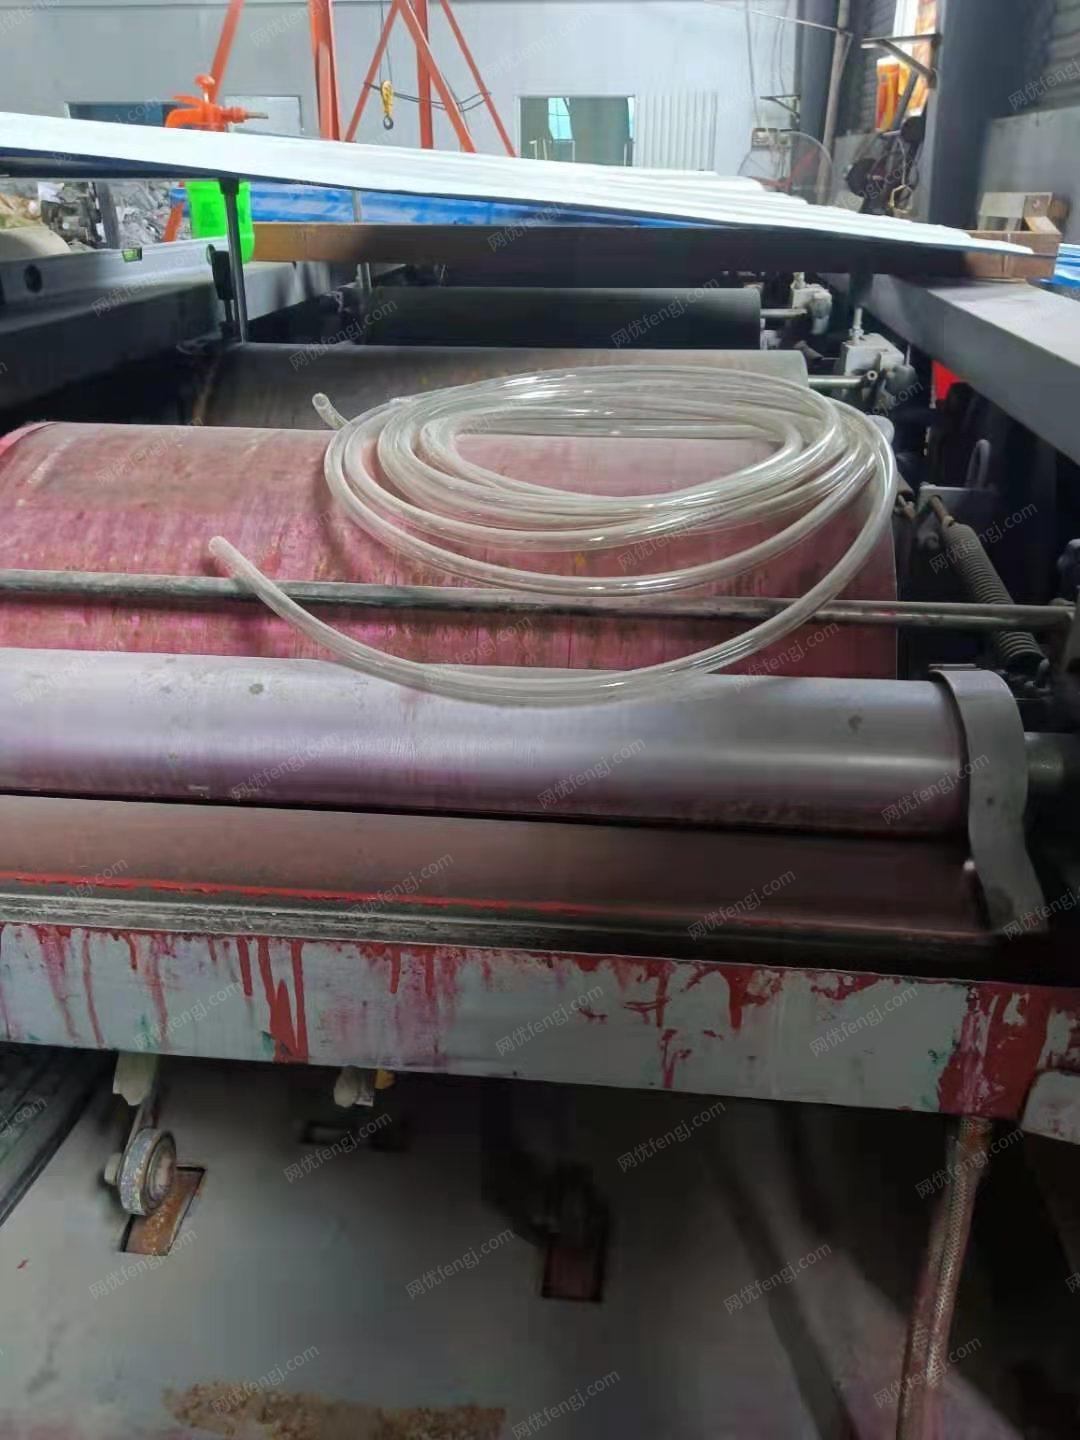 印刷厂就近出售600　4色普通编织袋胶版印刷机1台，600　5色电脑彩色编织袋印刷机1台，有图片